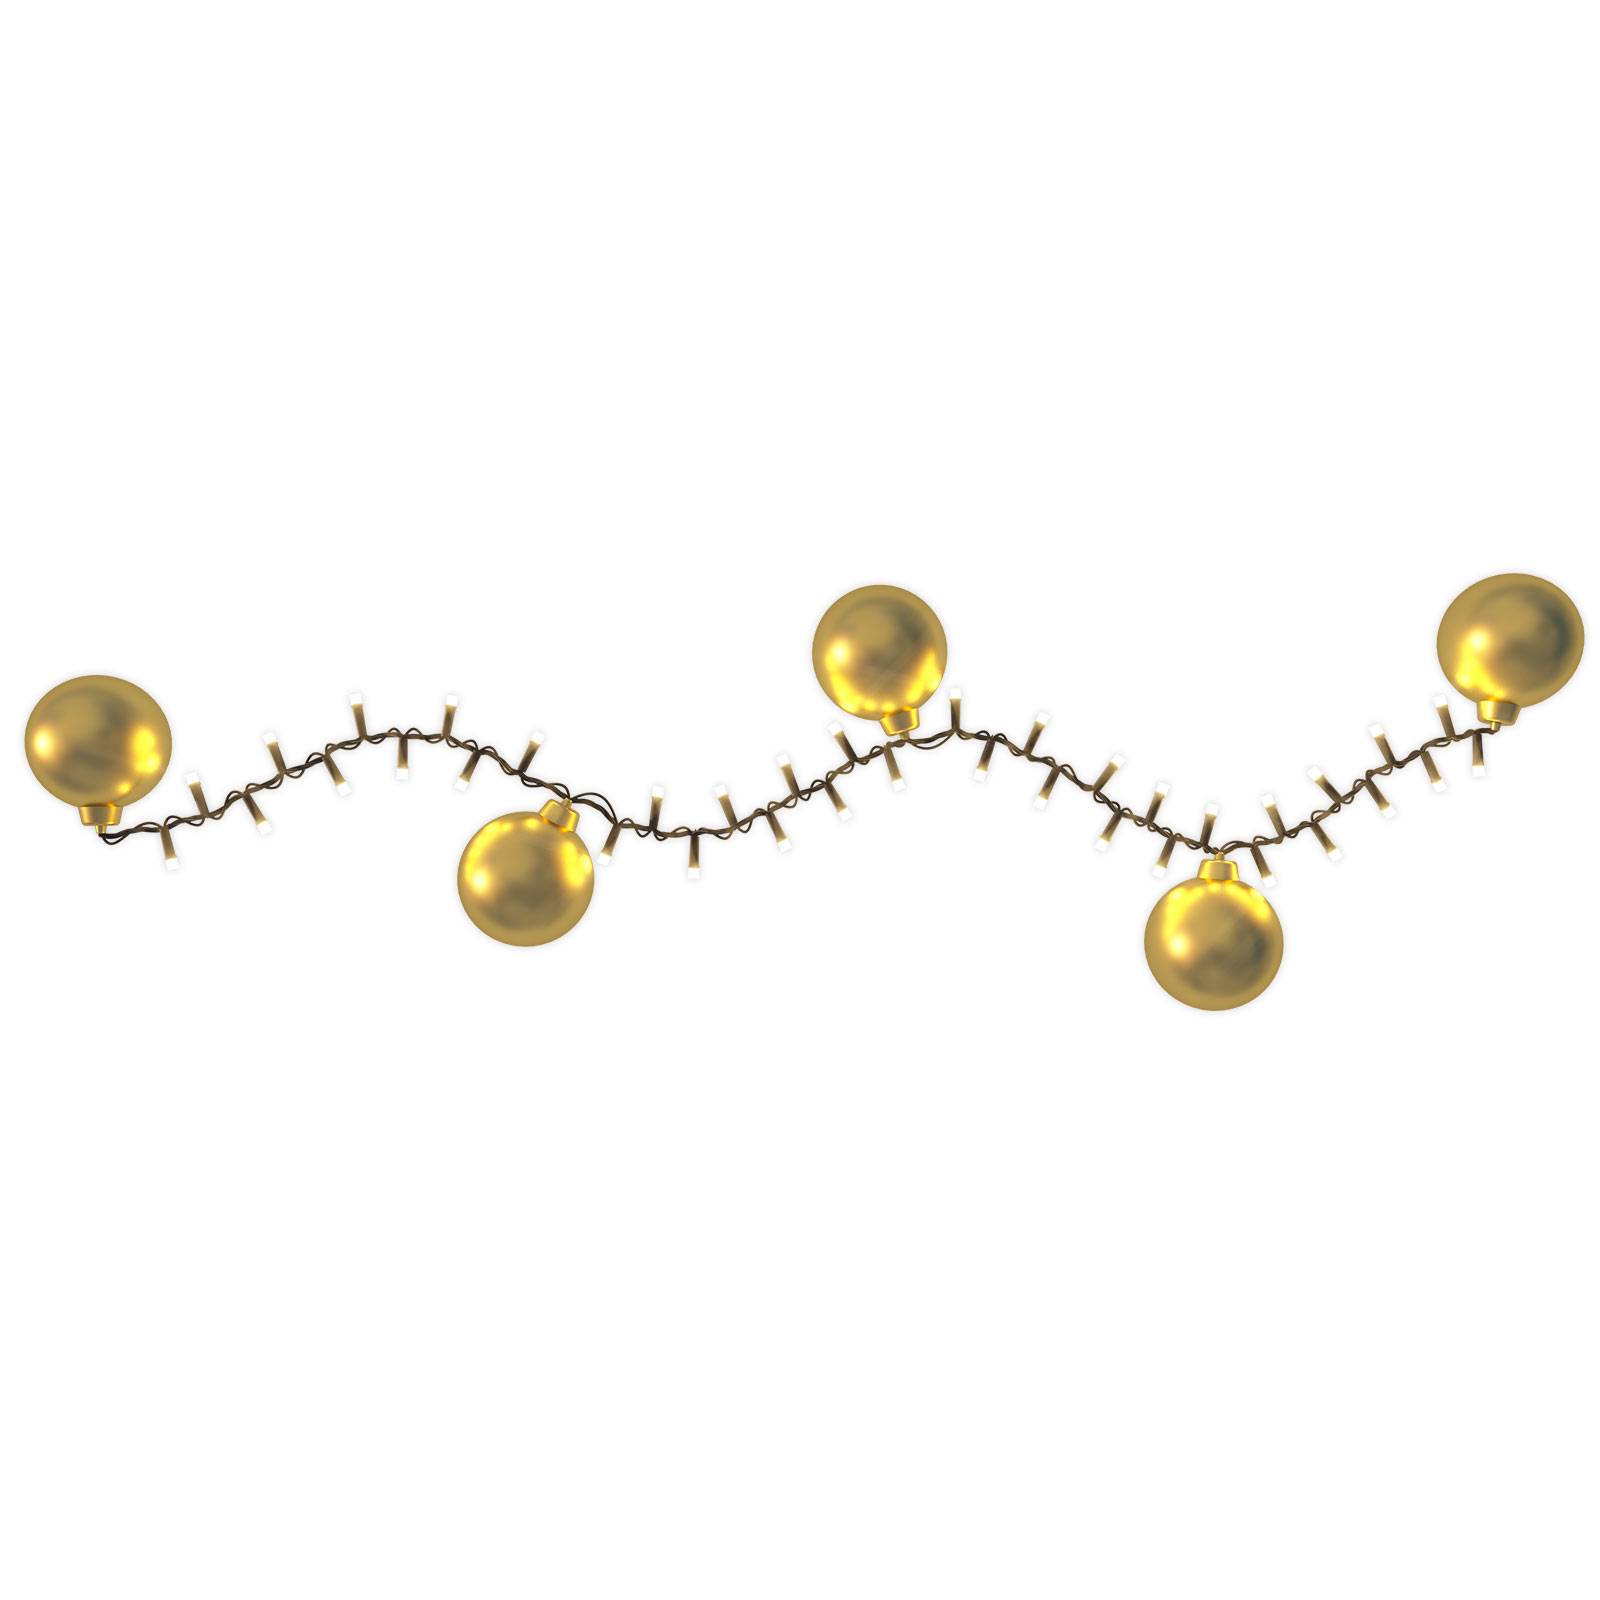 Hemsson LED-Lichterkette 2in1, Champagne gold, 550 LEDs